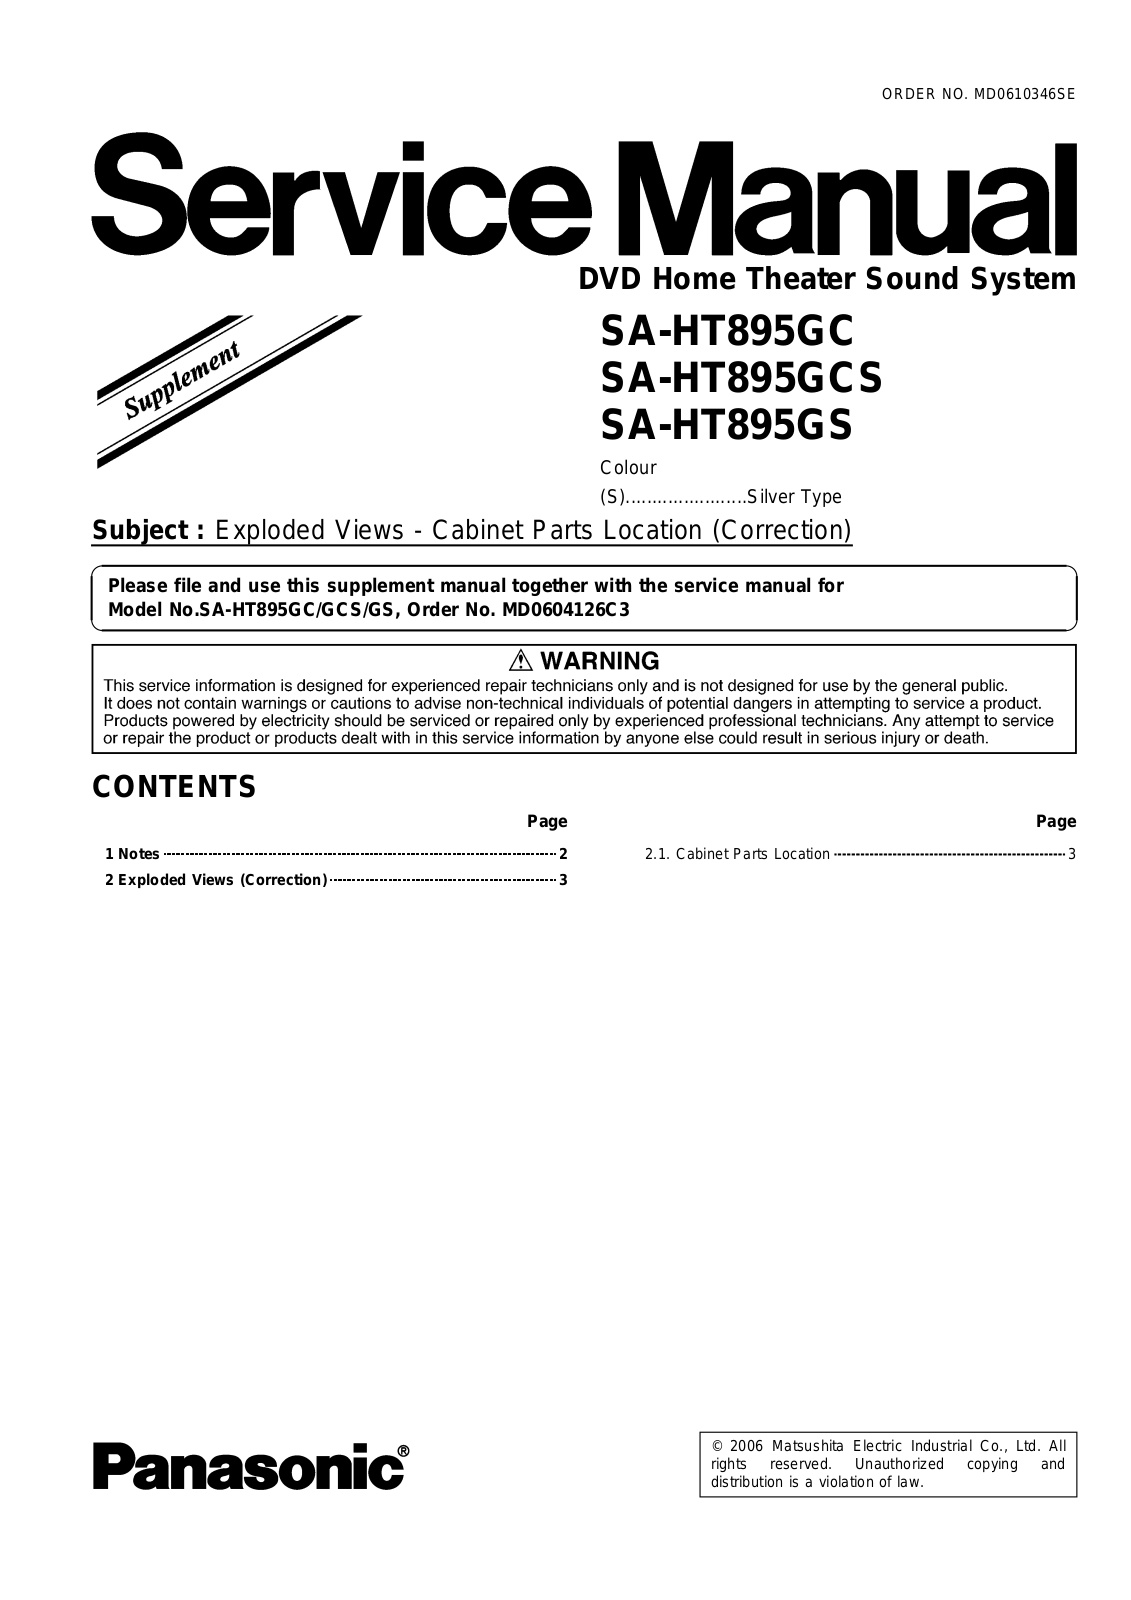 Panasonic SAHT-895-GC, SAHT-895-GCS, SAHT-895-GS Service manual